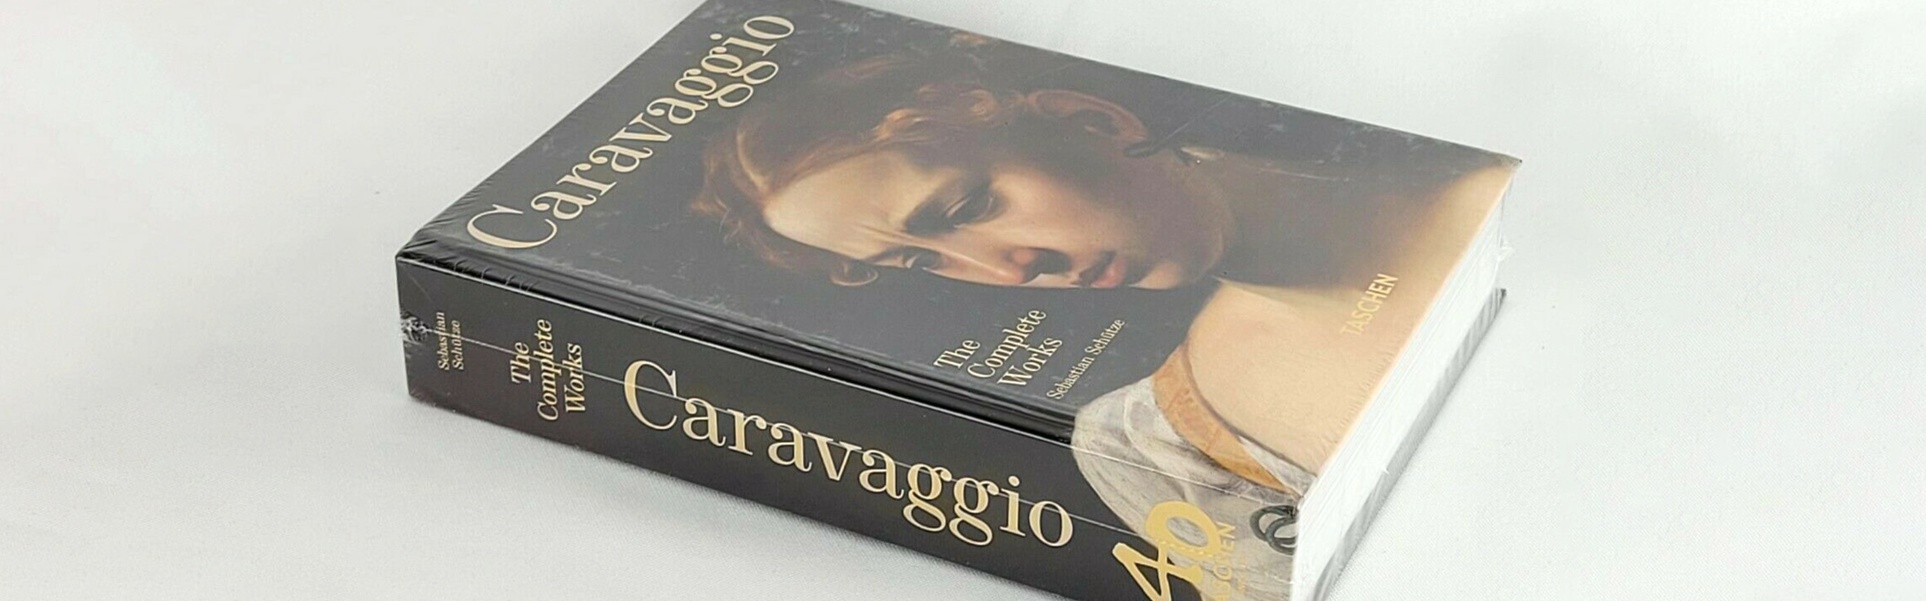 Livro de Caravaggio: as obras completas